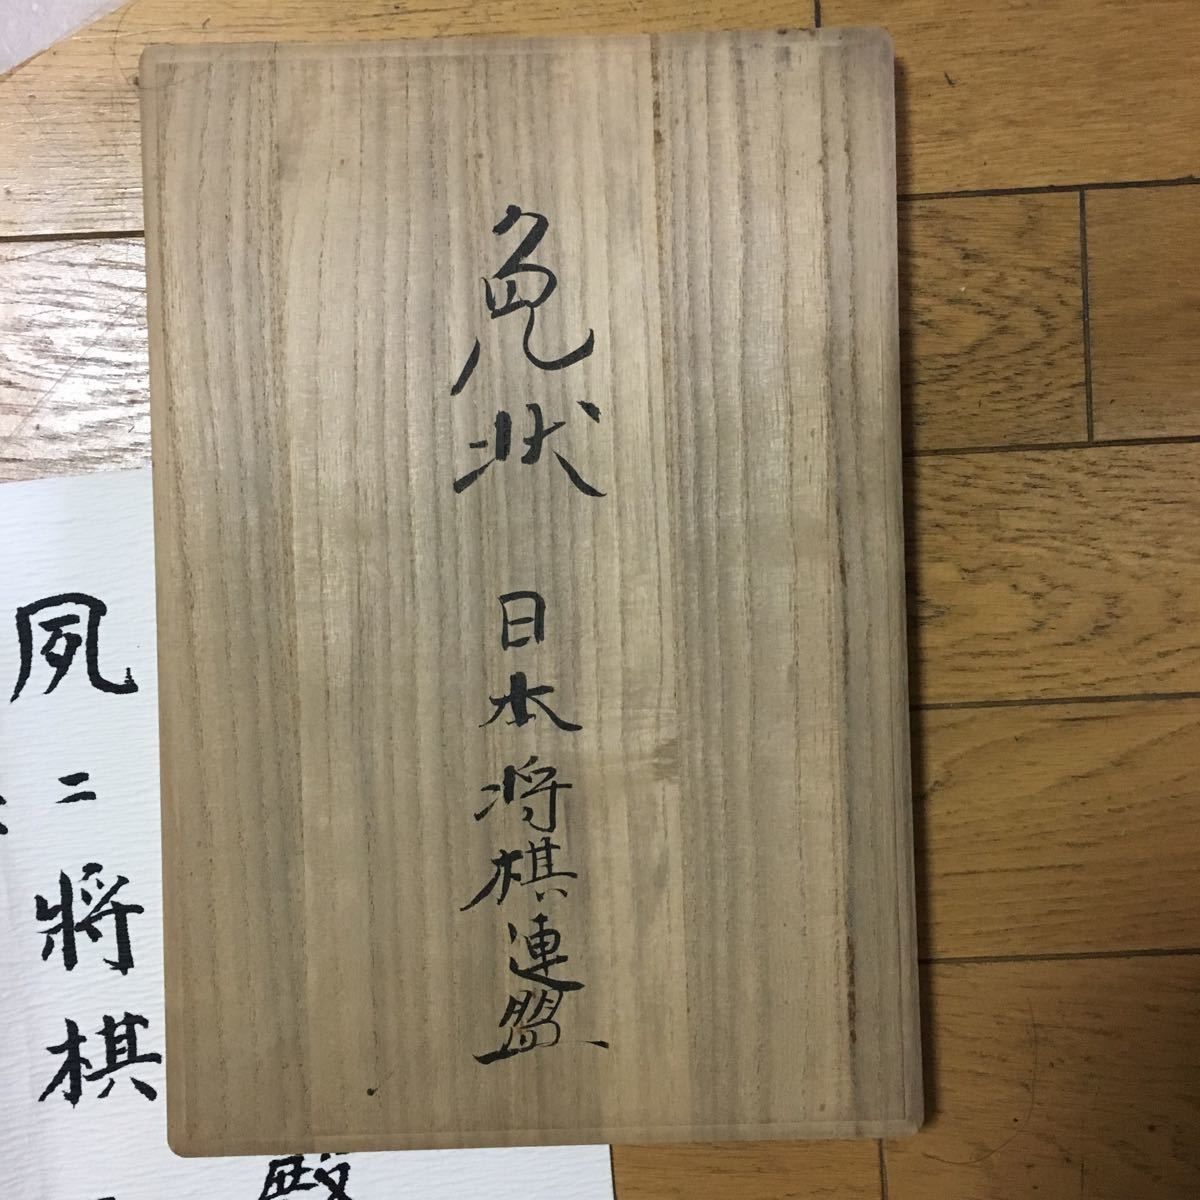  супер редкий shogi освобождение форма дерево ., большой гора эксперт. автограф подпись ввод 